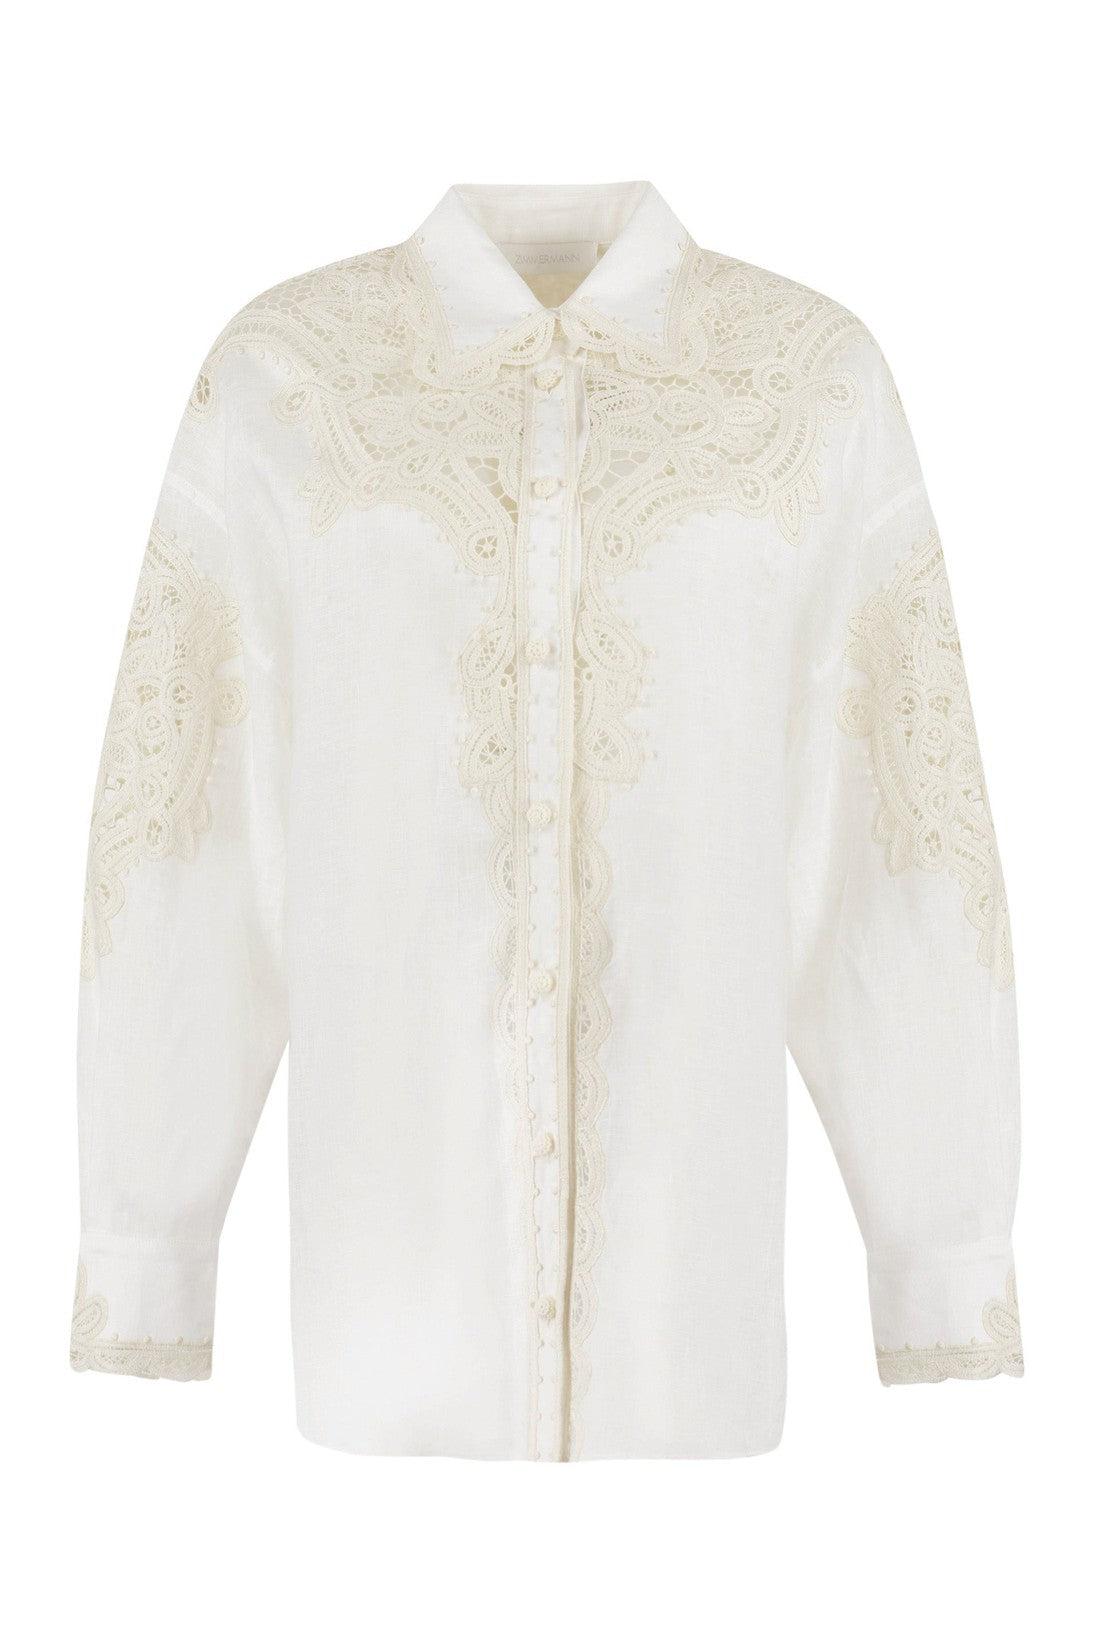 Zimmermann-OUTLET-SALE-Laurel linen shirt-ARCHIVIST